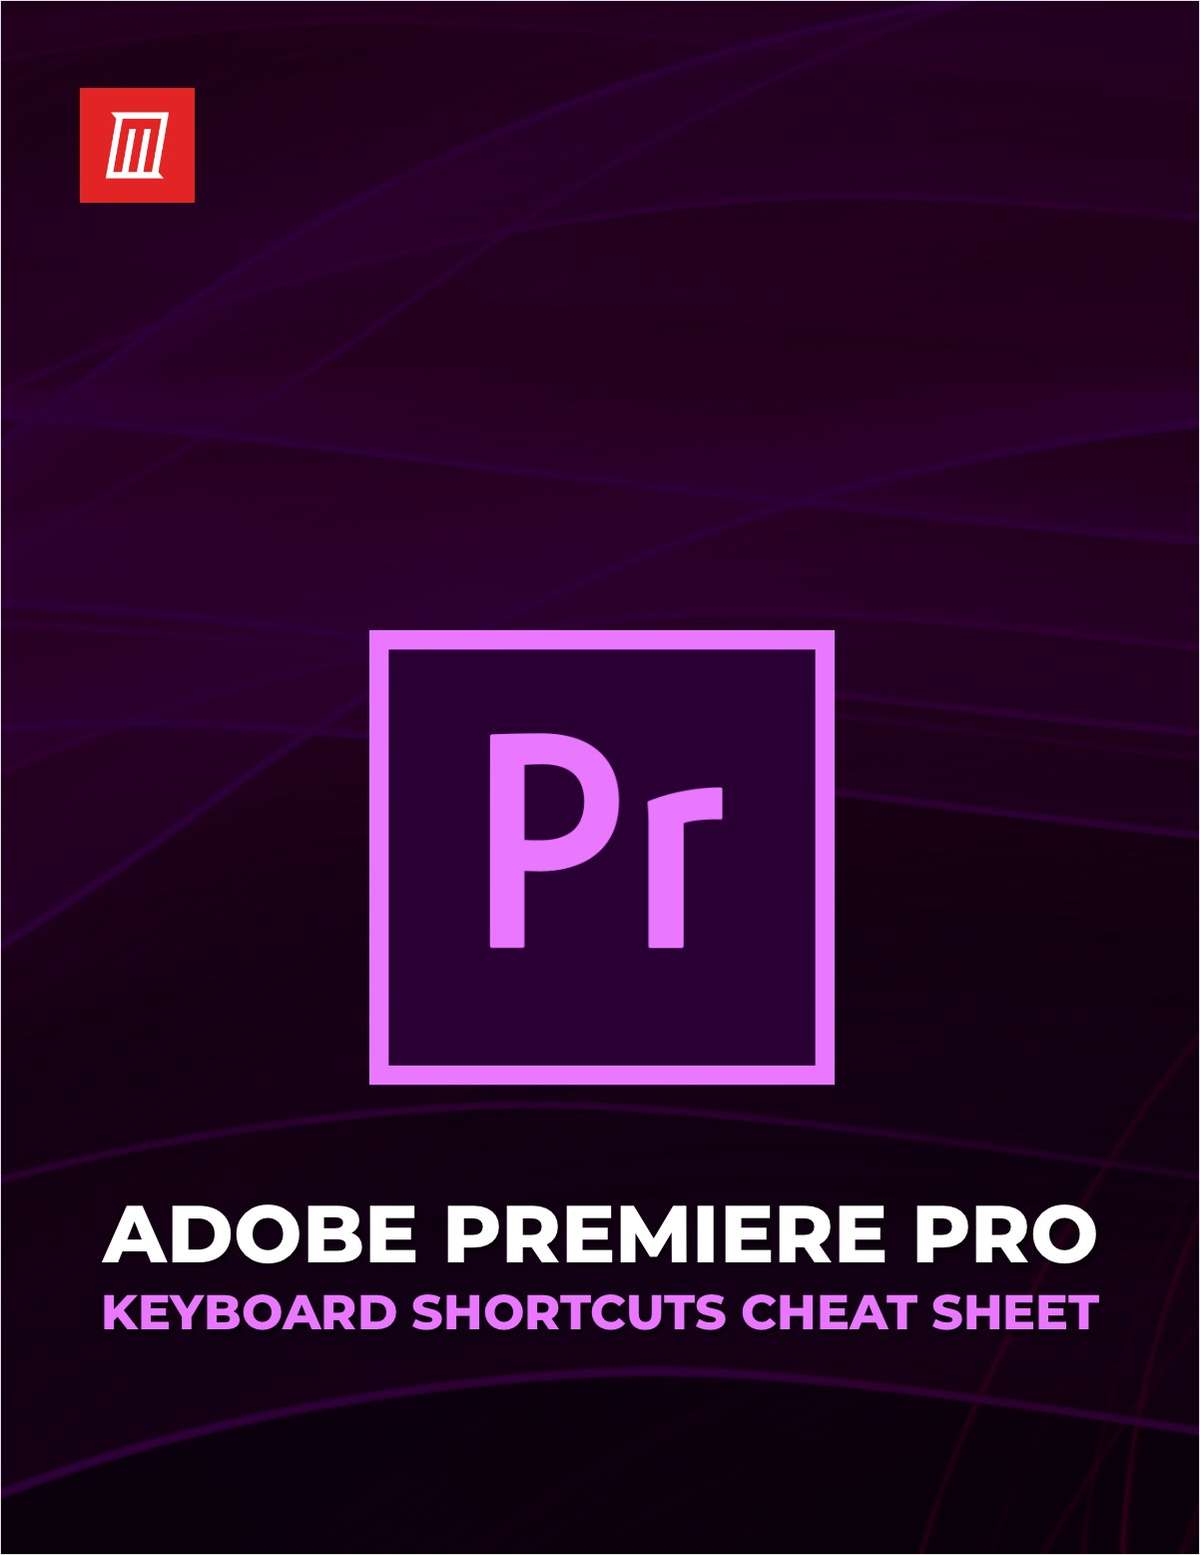 Adobe Premiere Pro Keyboard Shortcuts